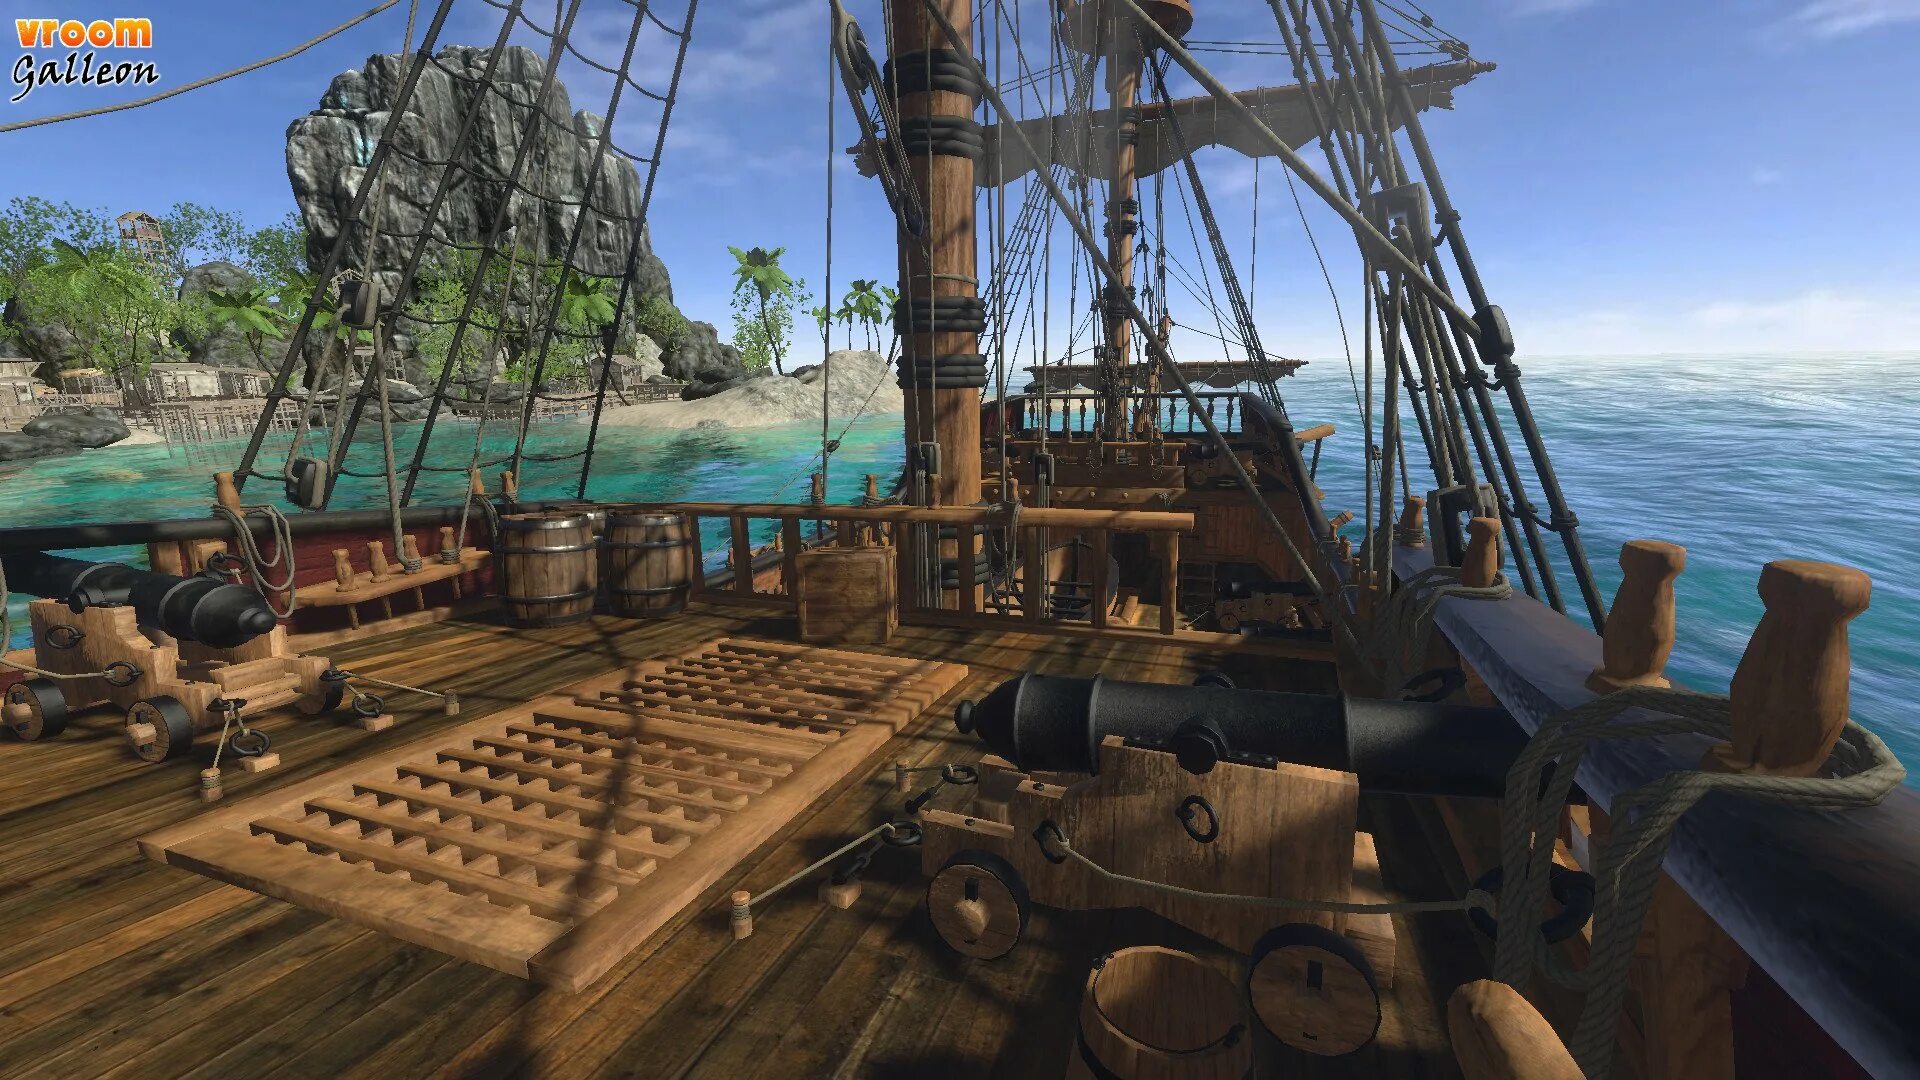 Борт корабля пиратов. Палуба корабля пиратов сбоку. Пиратский корабль. Палуба пиратского корабля. Борт пиратского корабля.